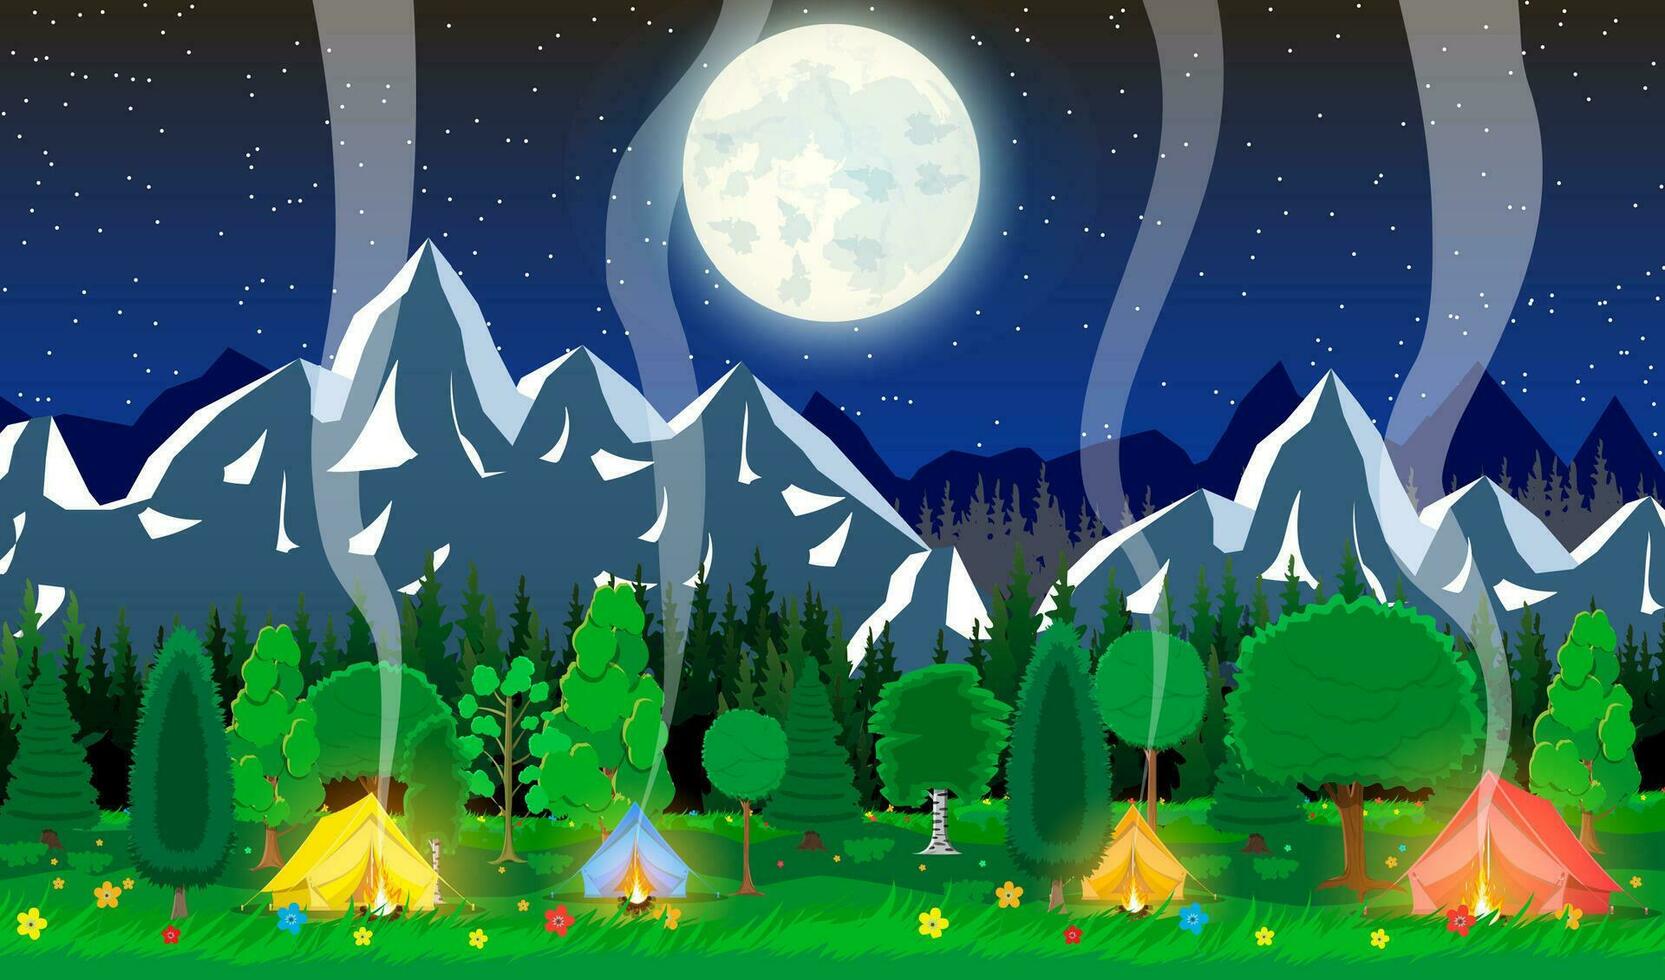 Prado com Relva e acampamento dentro noite. barraca, fogueira, flores, montanhas, árvores, céu, lua e estrelas. vetor ilustração dentro plano estilo